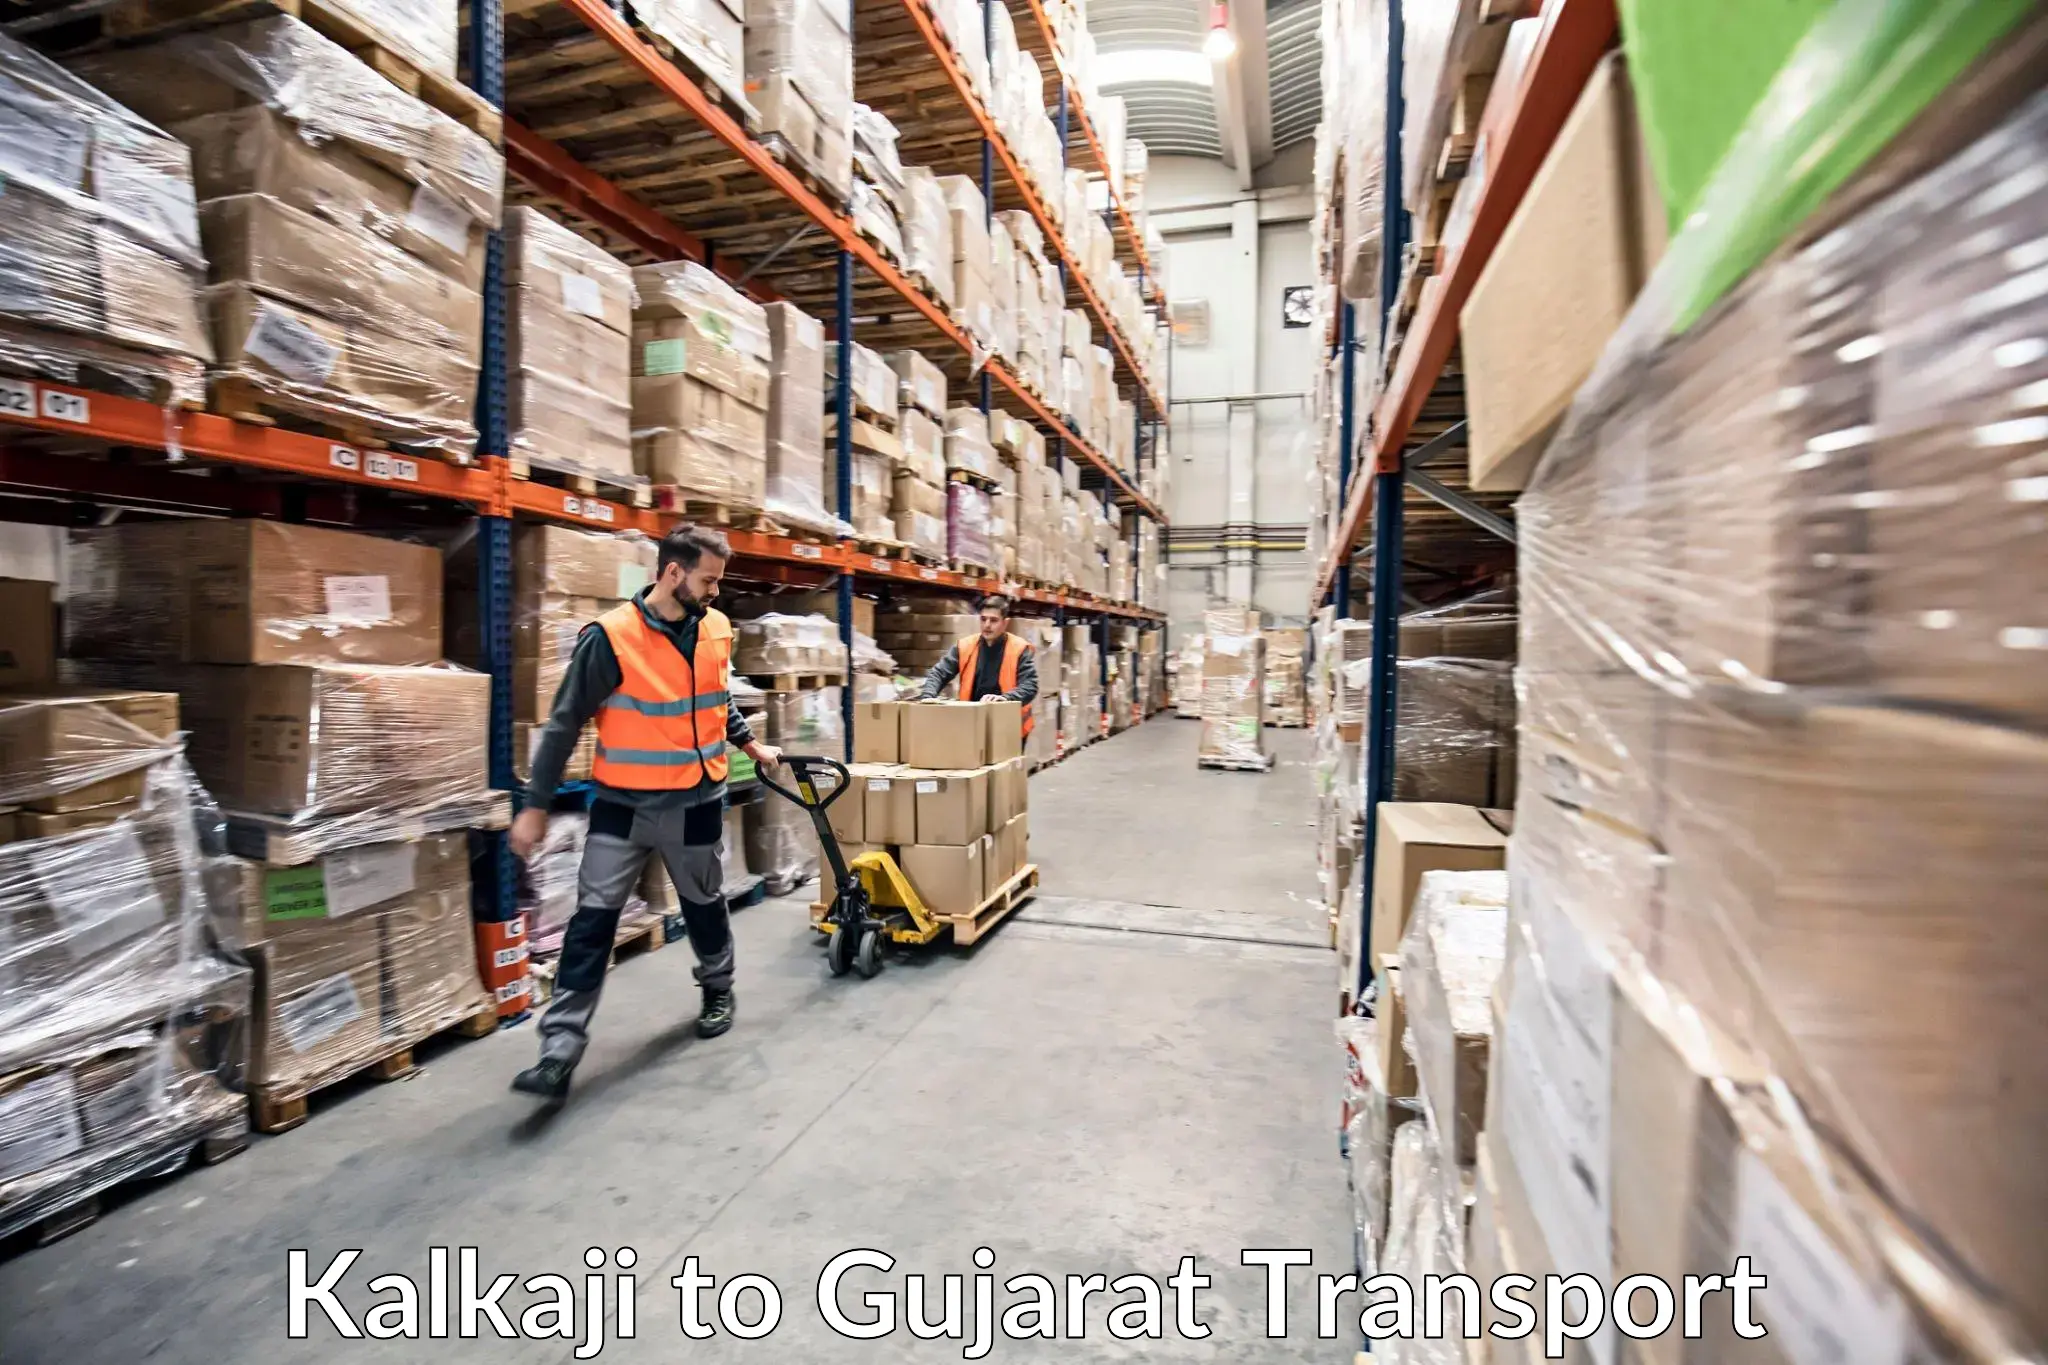 Daily transport service Kalkaji to Gujarat